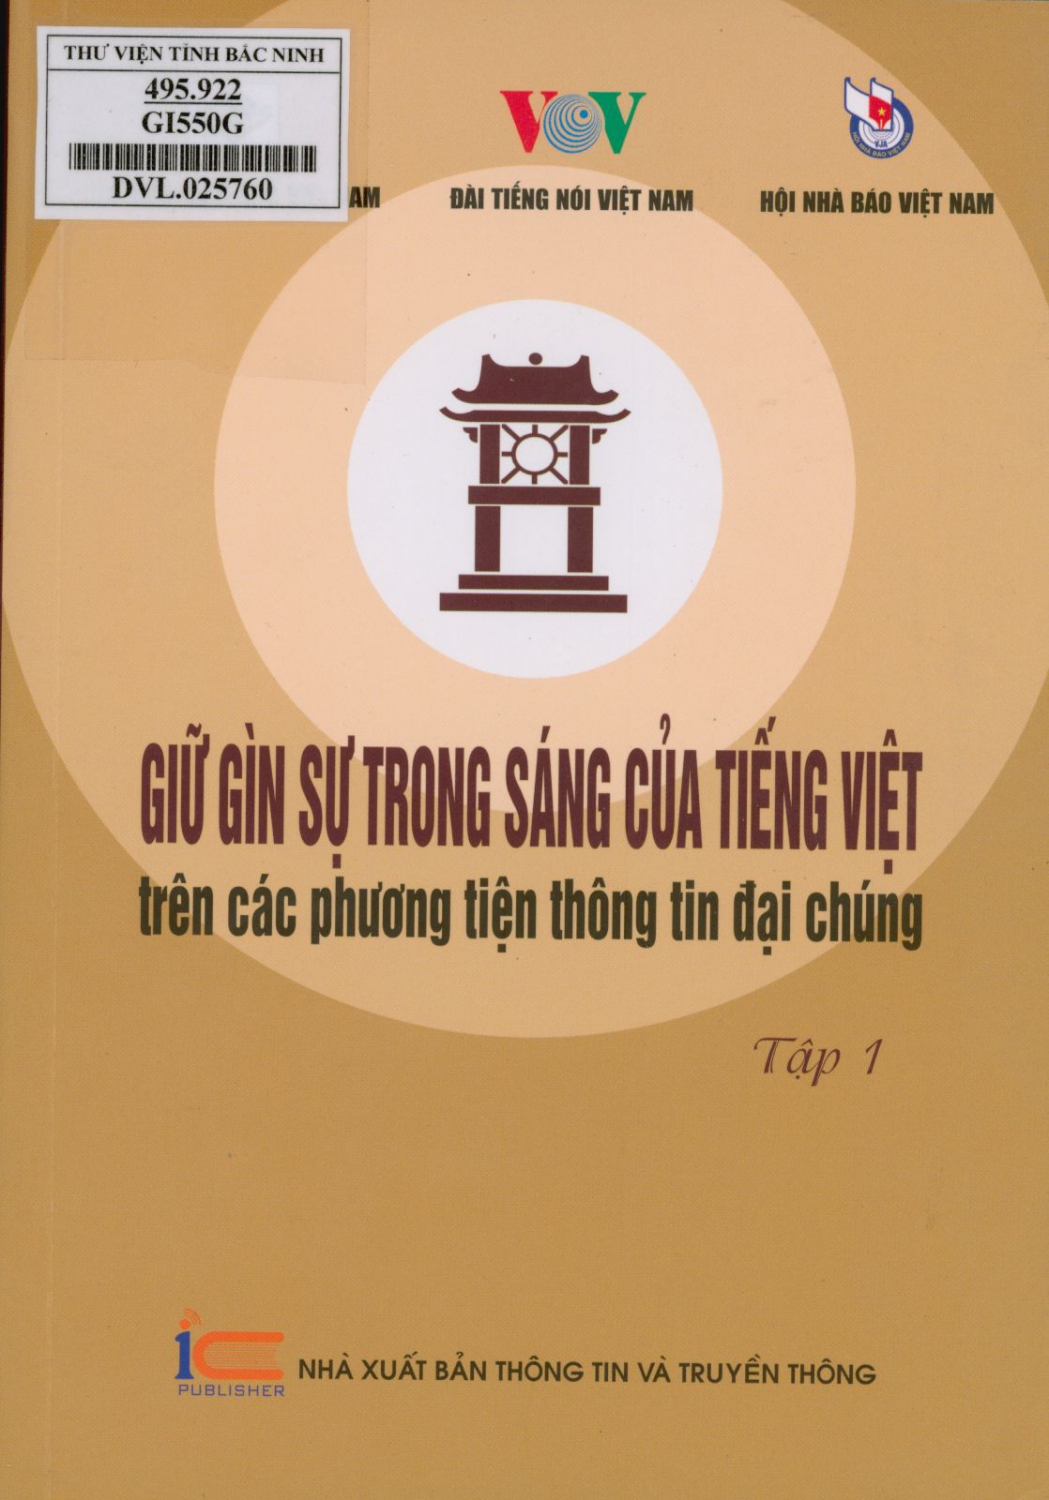 Giữ gìn sự trong sáng của tiếng Việt trên các phương tiện thông tin đại chúng